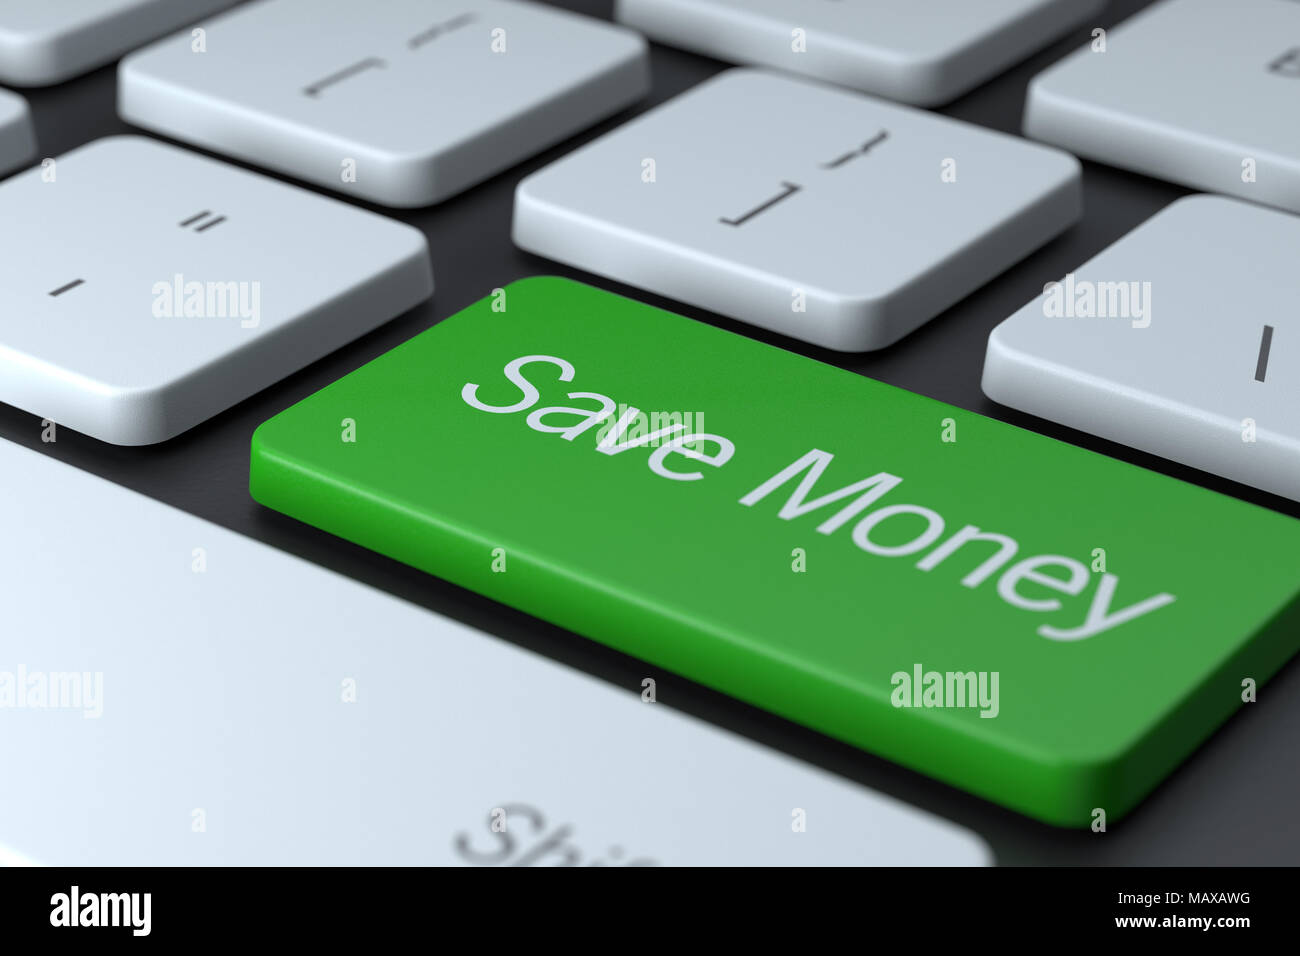 Primer plano de teclado de ordenador con el botón verde de ahorrar dinero. Concepto ilustra el ahorro de dinero en línea, comprar en línea, o guardar el dinero en el internet. Foto de stock